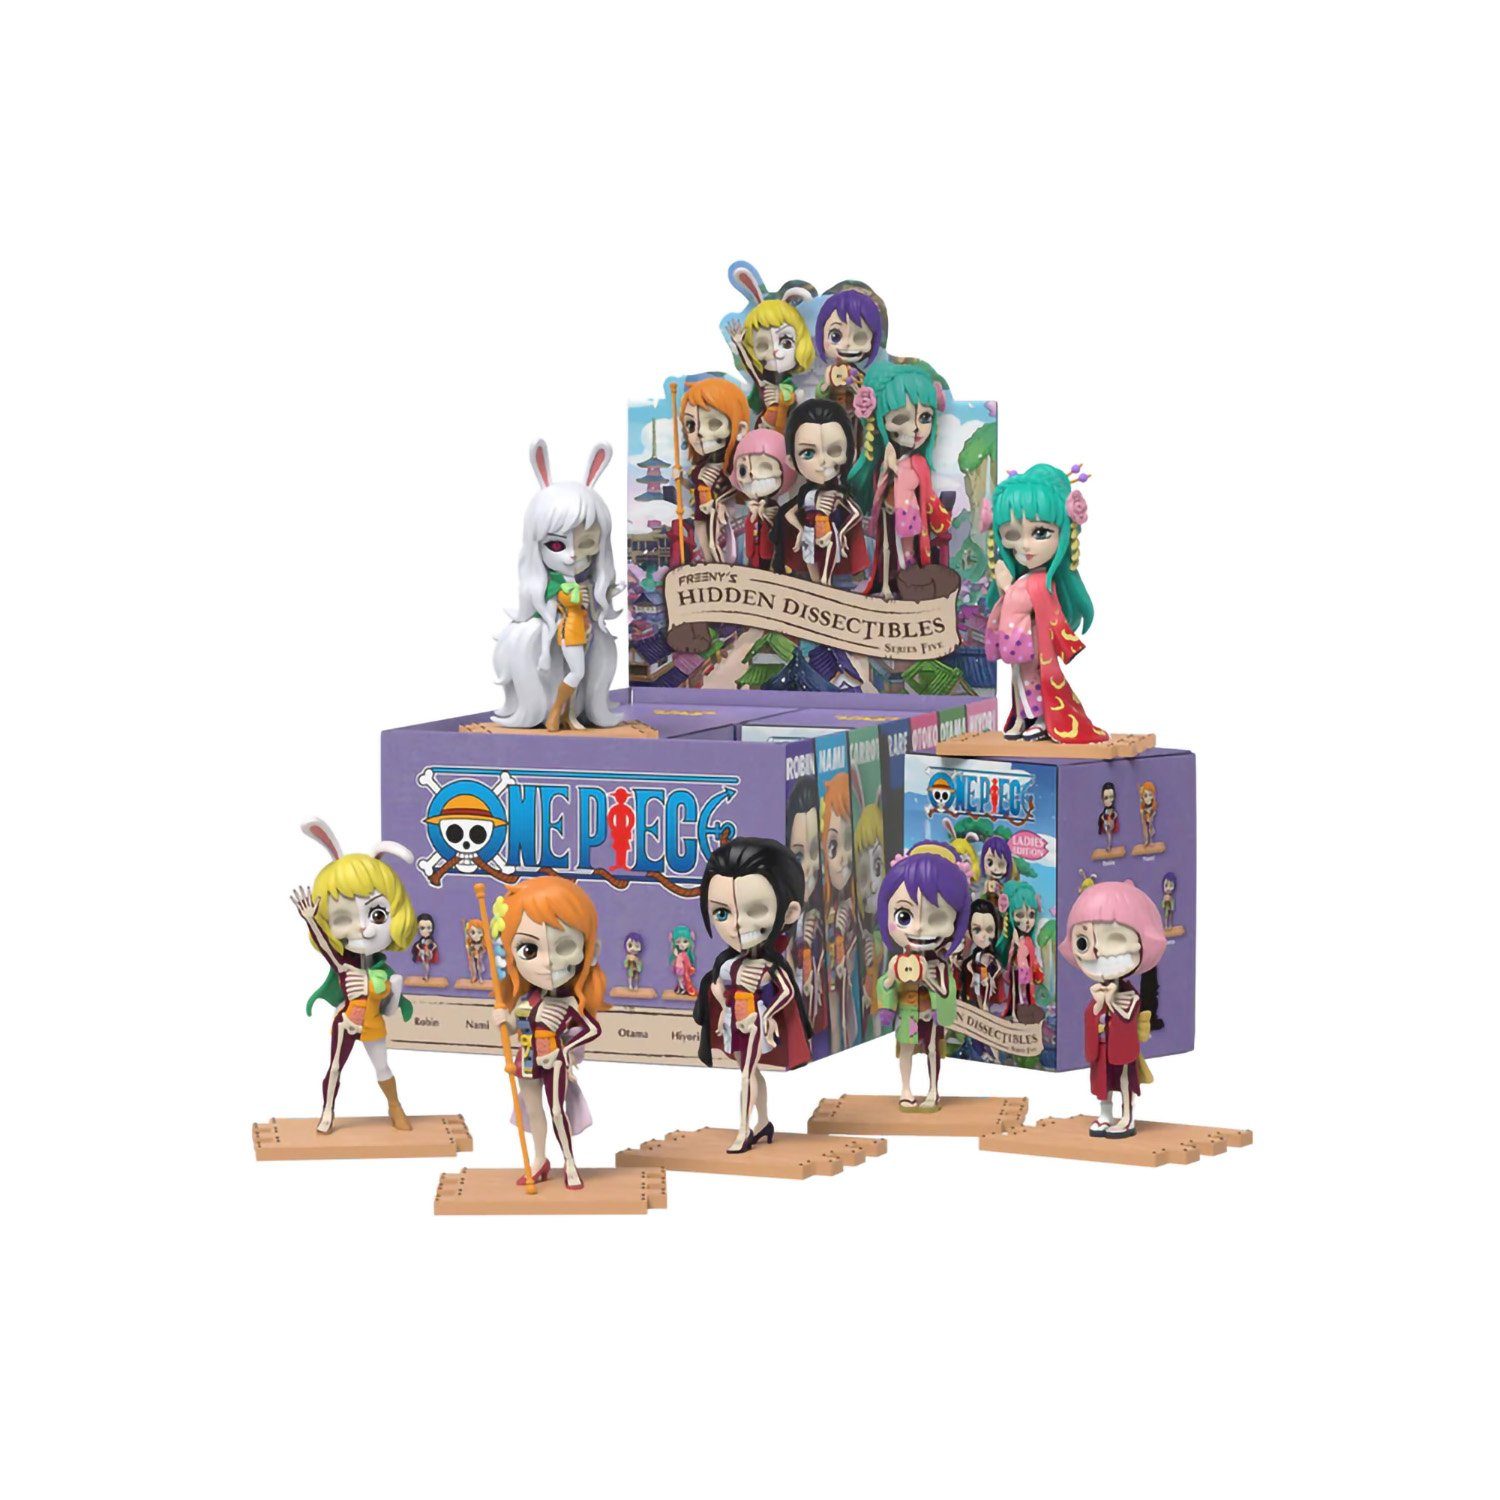 One Piece Anime Sammelfigur Hidden Box, enthält 5 One Eine Packung eine – Figur (Ladies Piece Series Edition), zufällige Blind Dissectibles